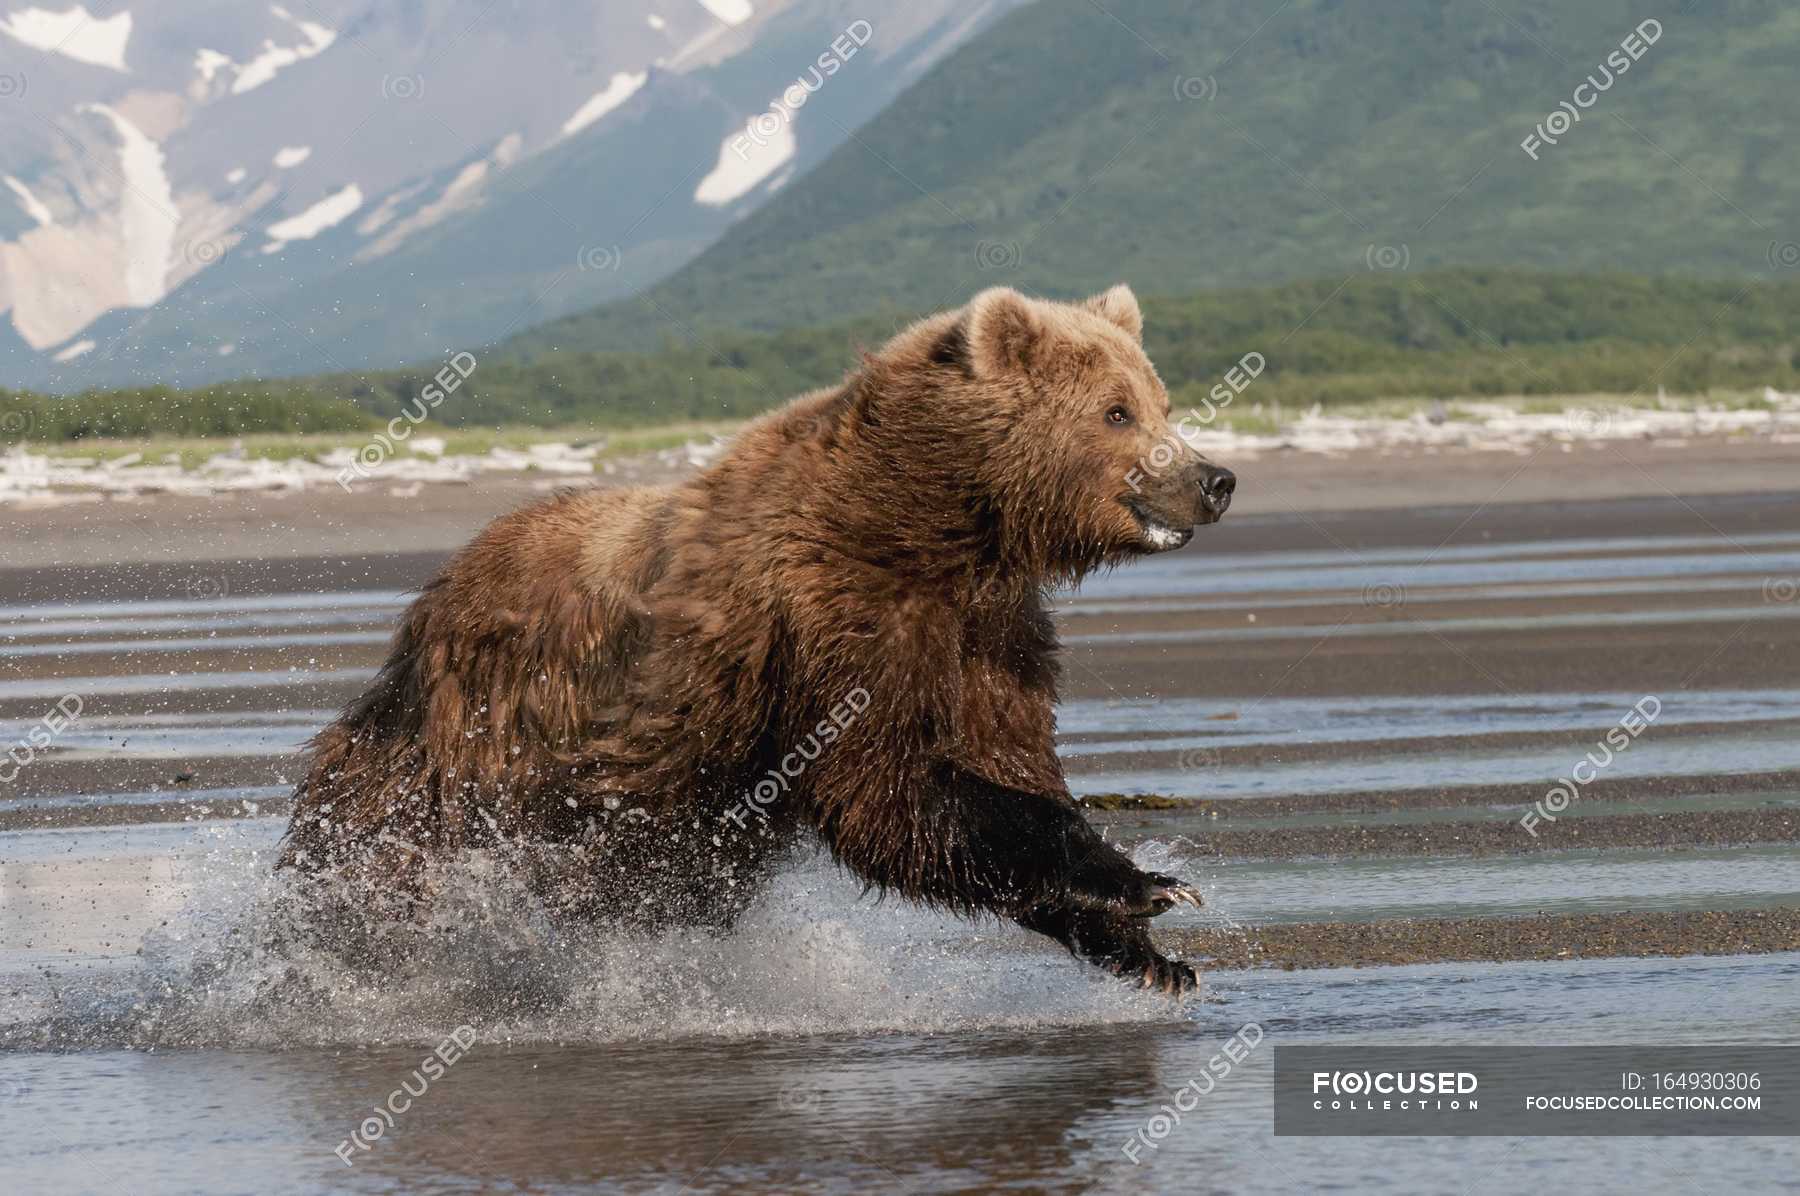 Какая максимальная скорость у медведя